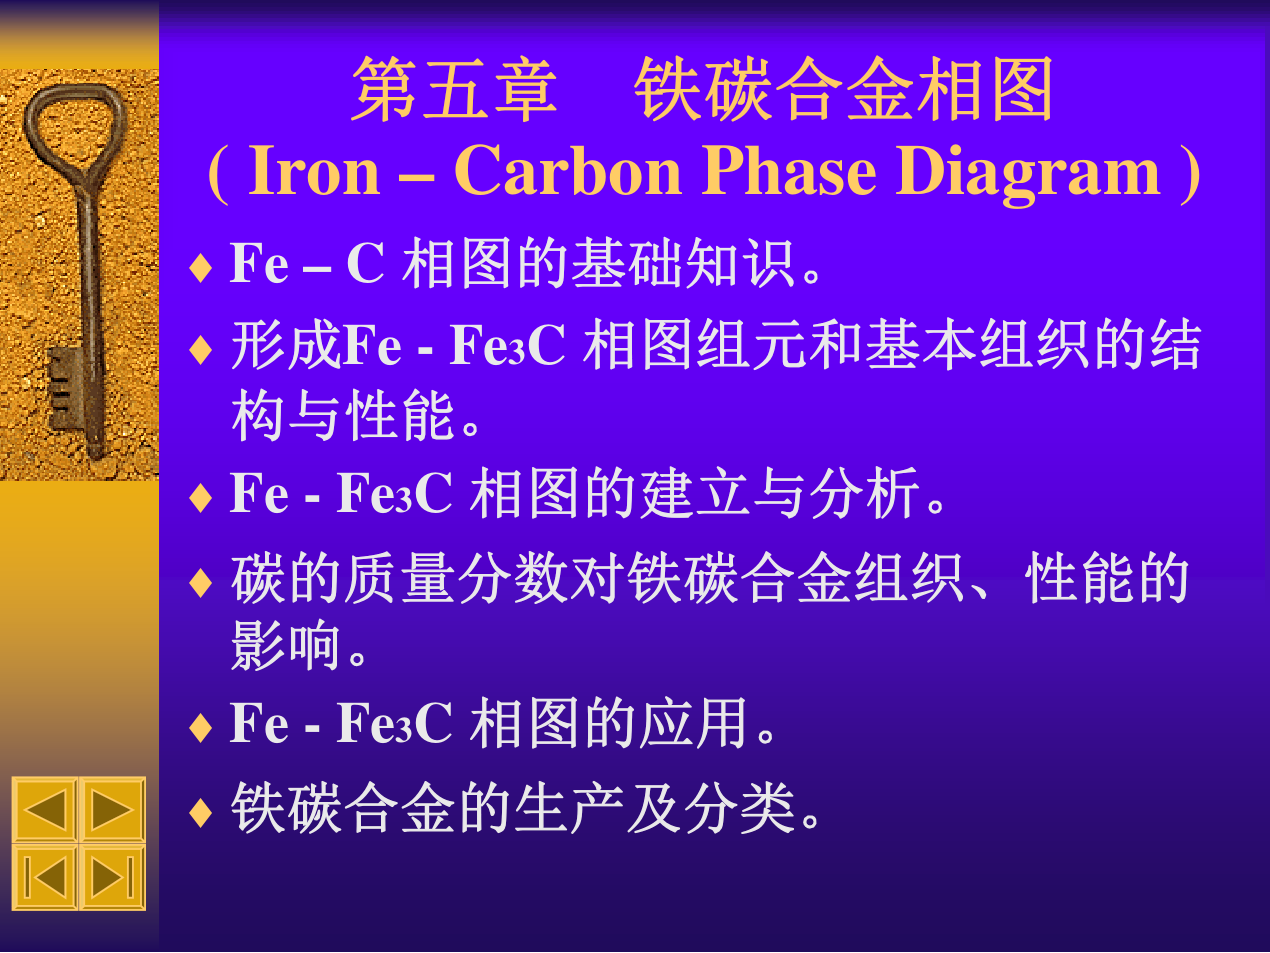 05 金属材料热处理 第五章 铁碳合金相图 课件